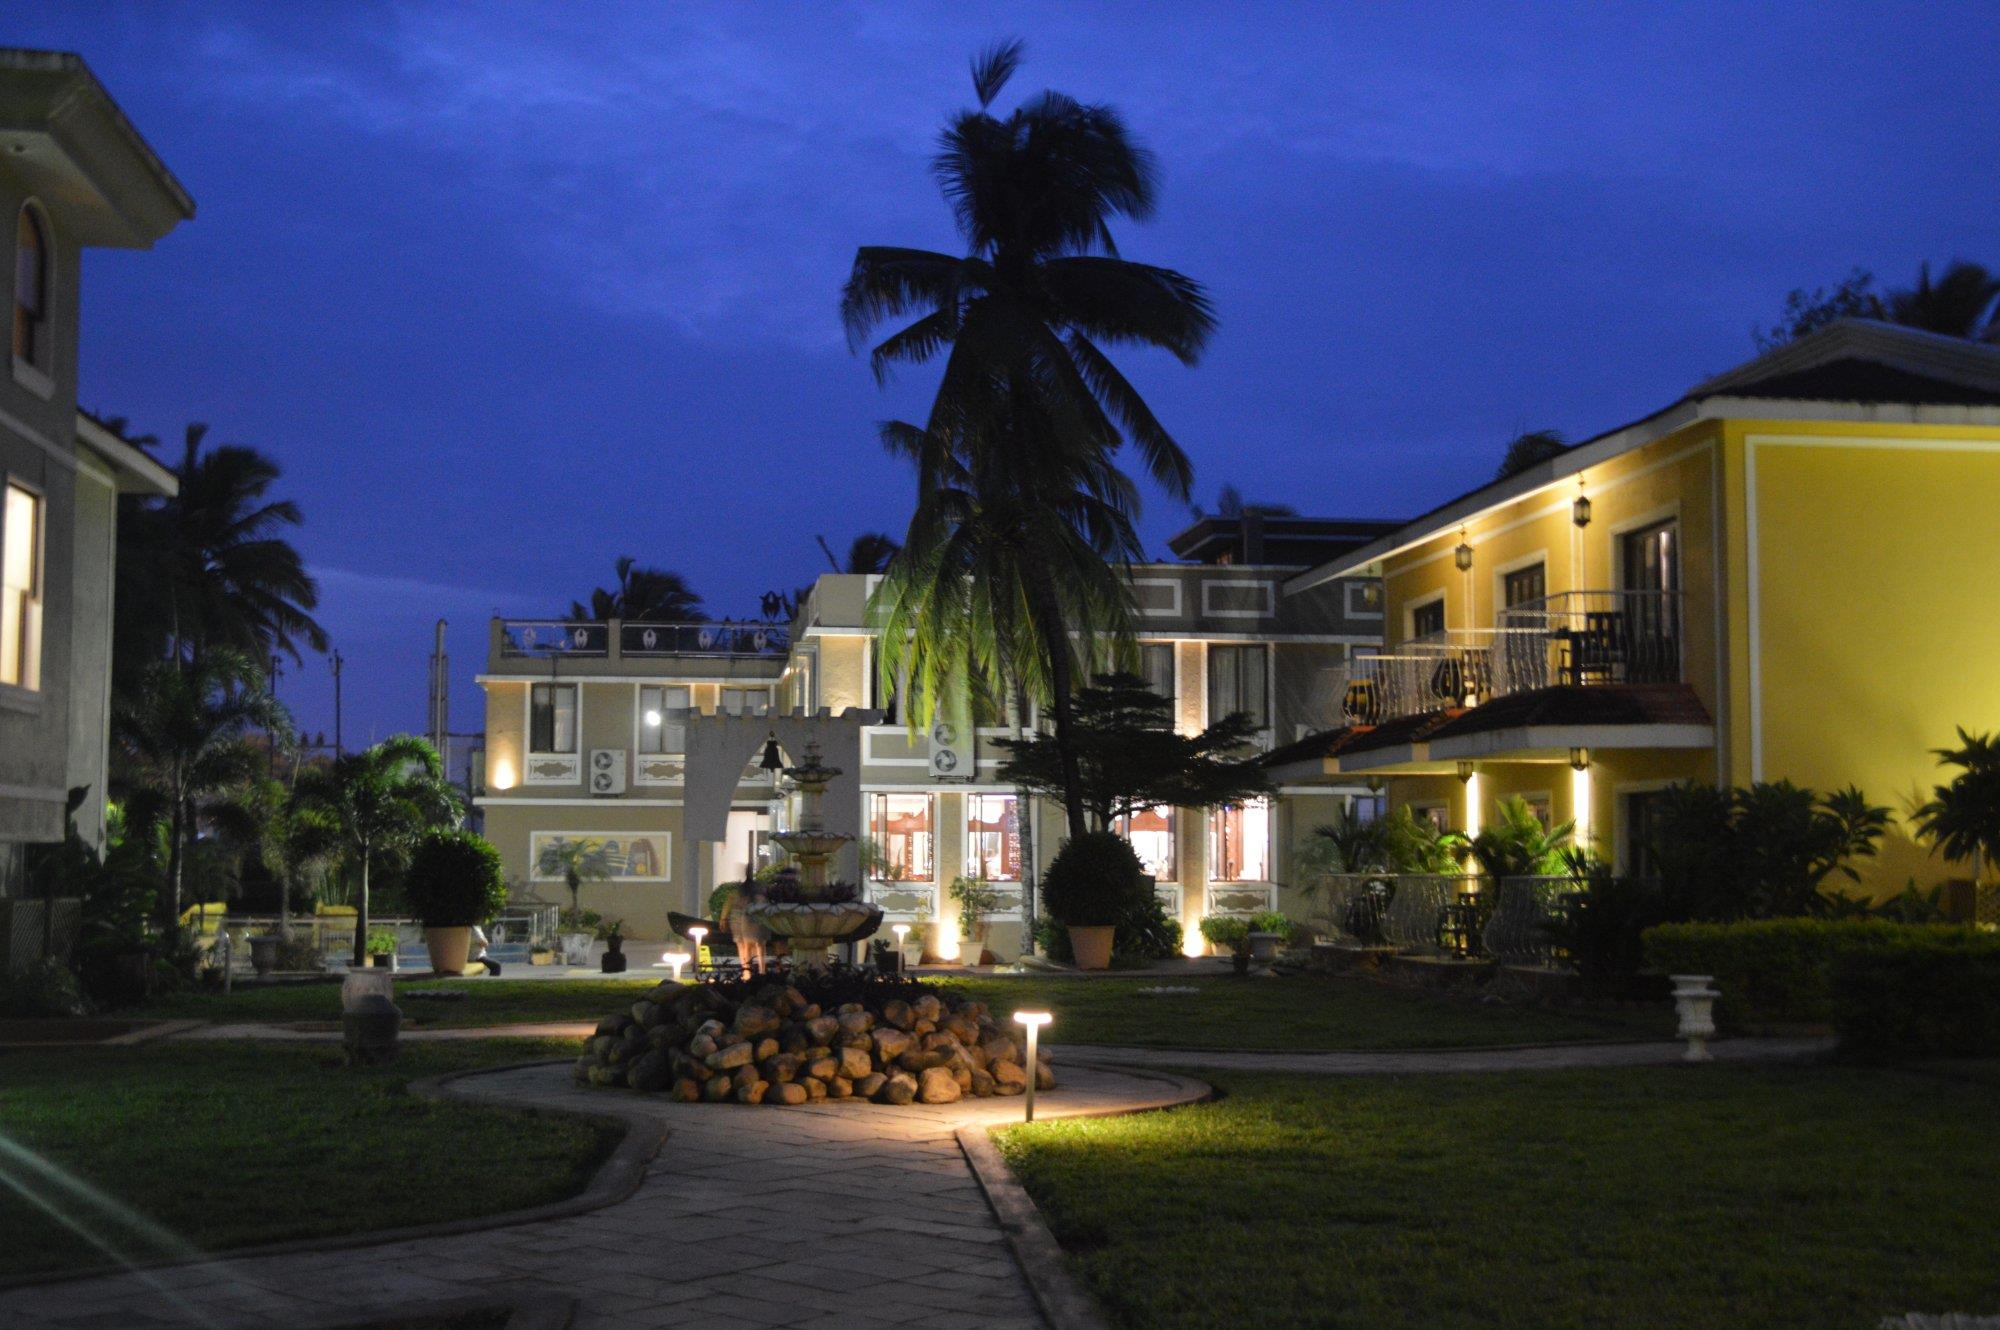 Resort in goa - acacia palms resort in goa - club mahindra